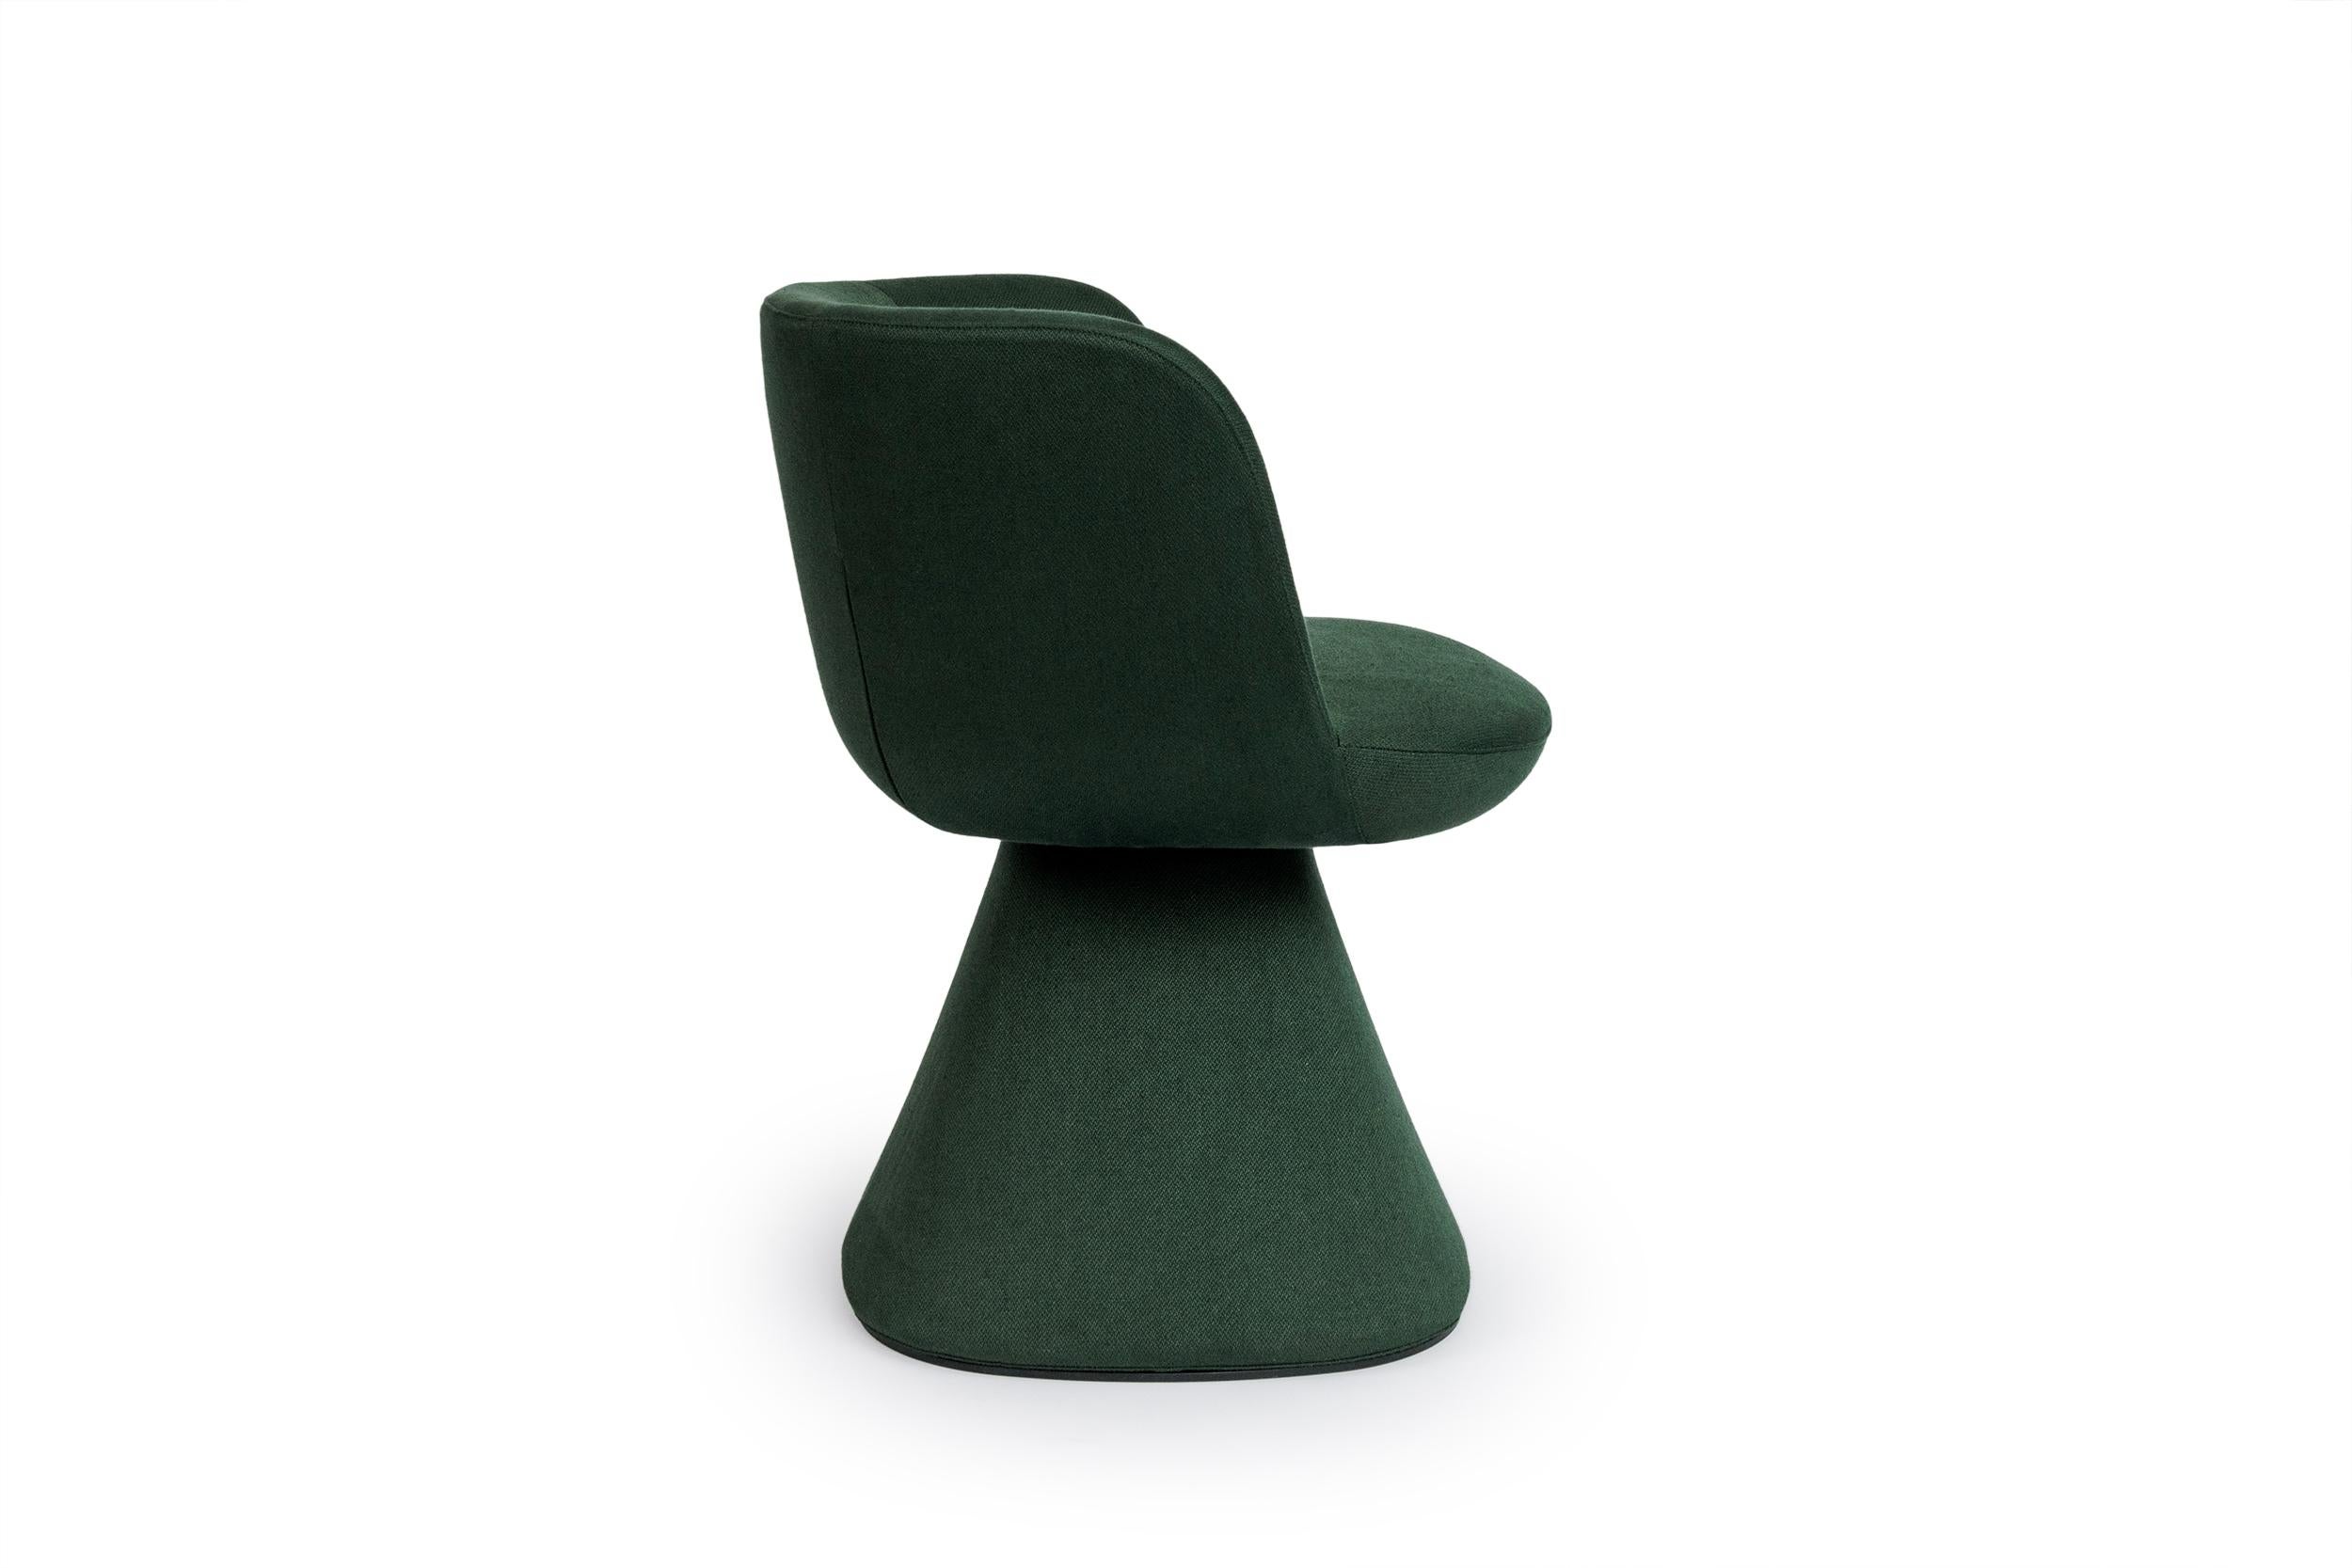 Der Flair O' Swivel Dining Chair, entworfen von Monica Armani für B&B Italia, ist ein kleiner häuslicher Thron, der auf einem Pyramidenstumpf mit abgerundeten Kanten sitzt und die Begriffe Eleganz und Charme in Einklang bringt. Die Basis verbreitert